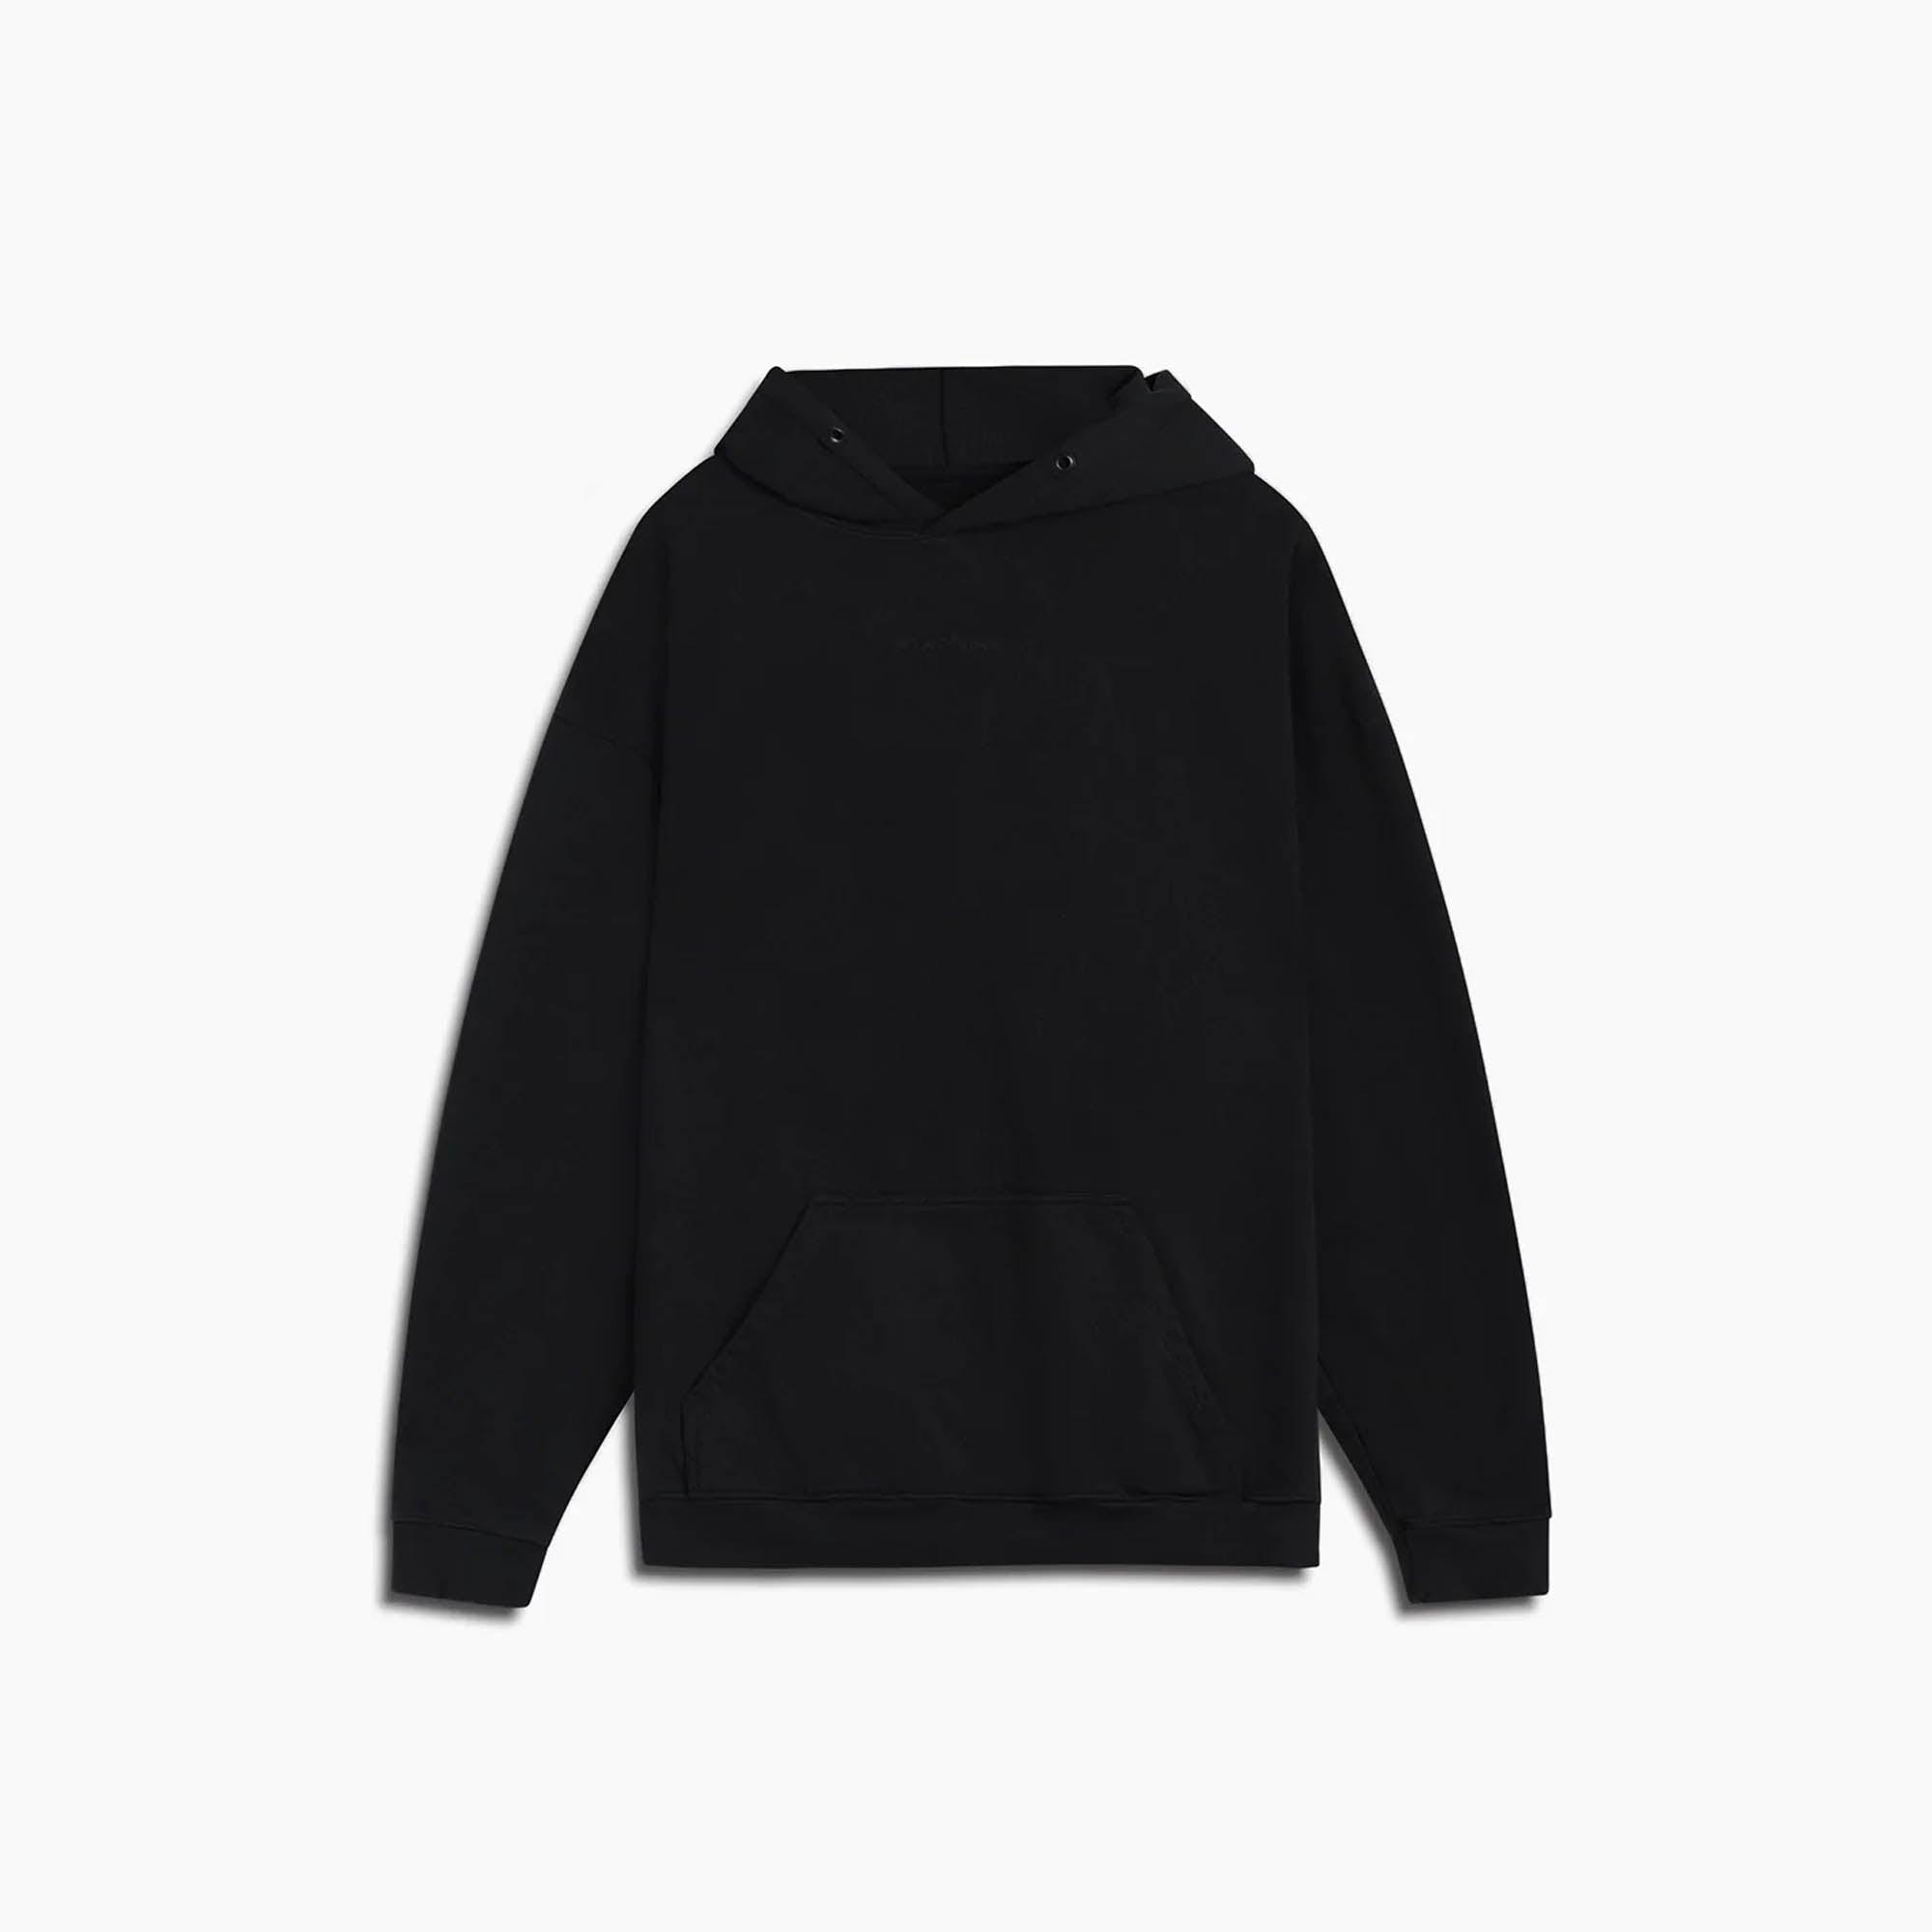 standard hoodie / black